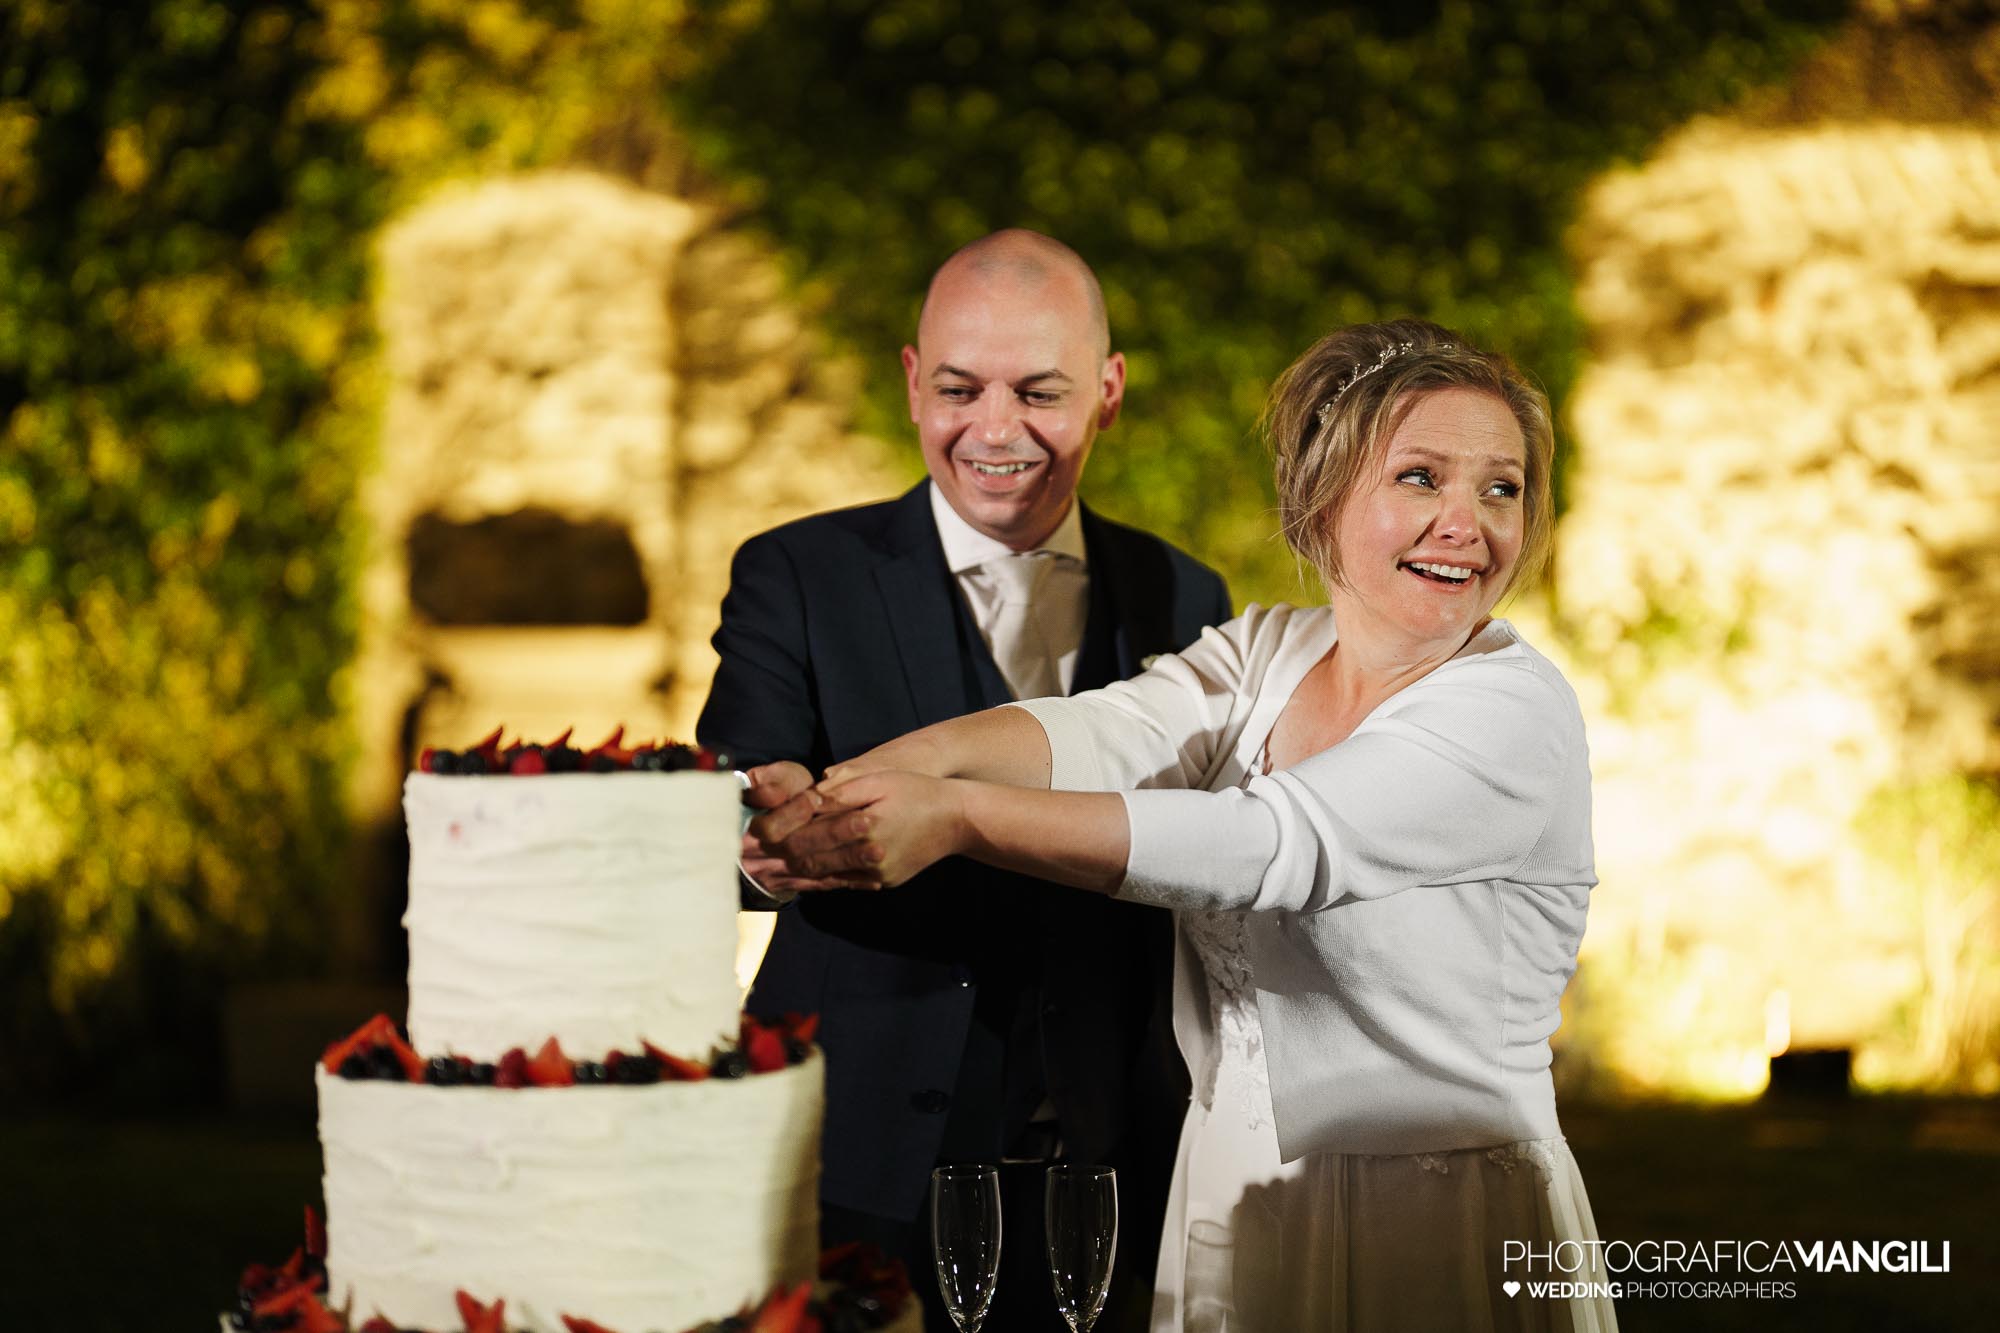 056 servizio fotografico wedding reportage taglio torta sposi castello di rossino lecco lago di como steffi giacomo